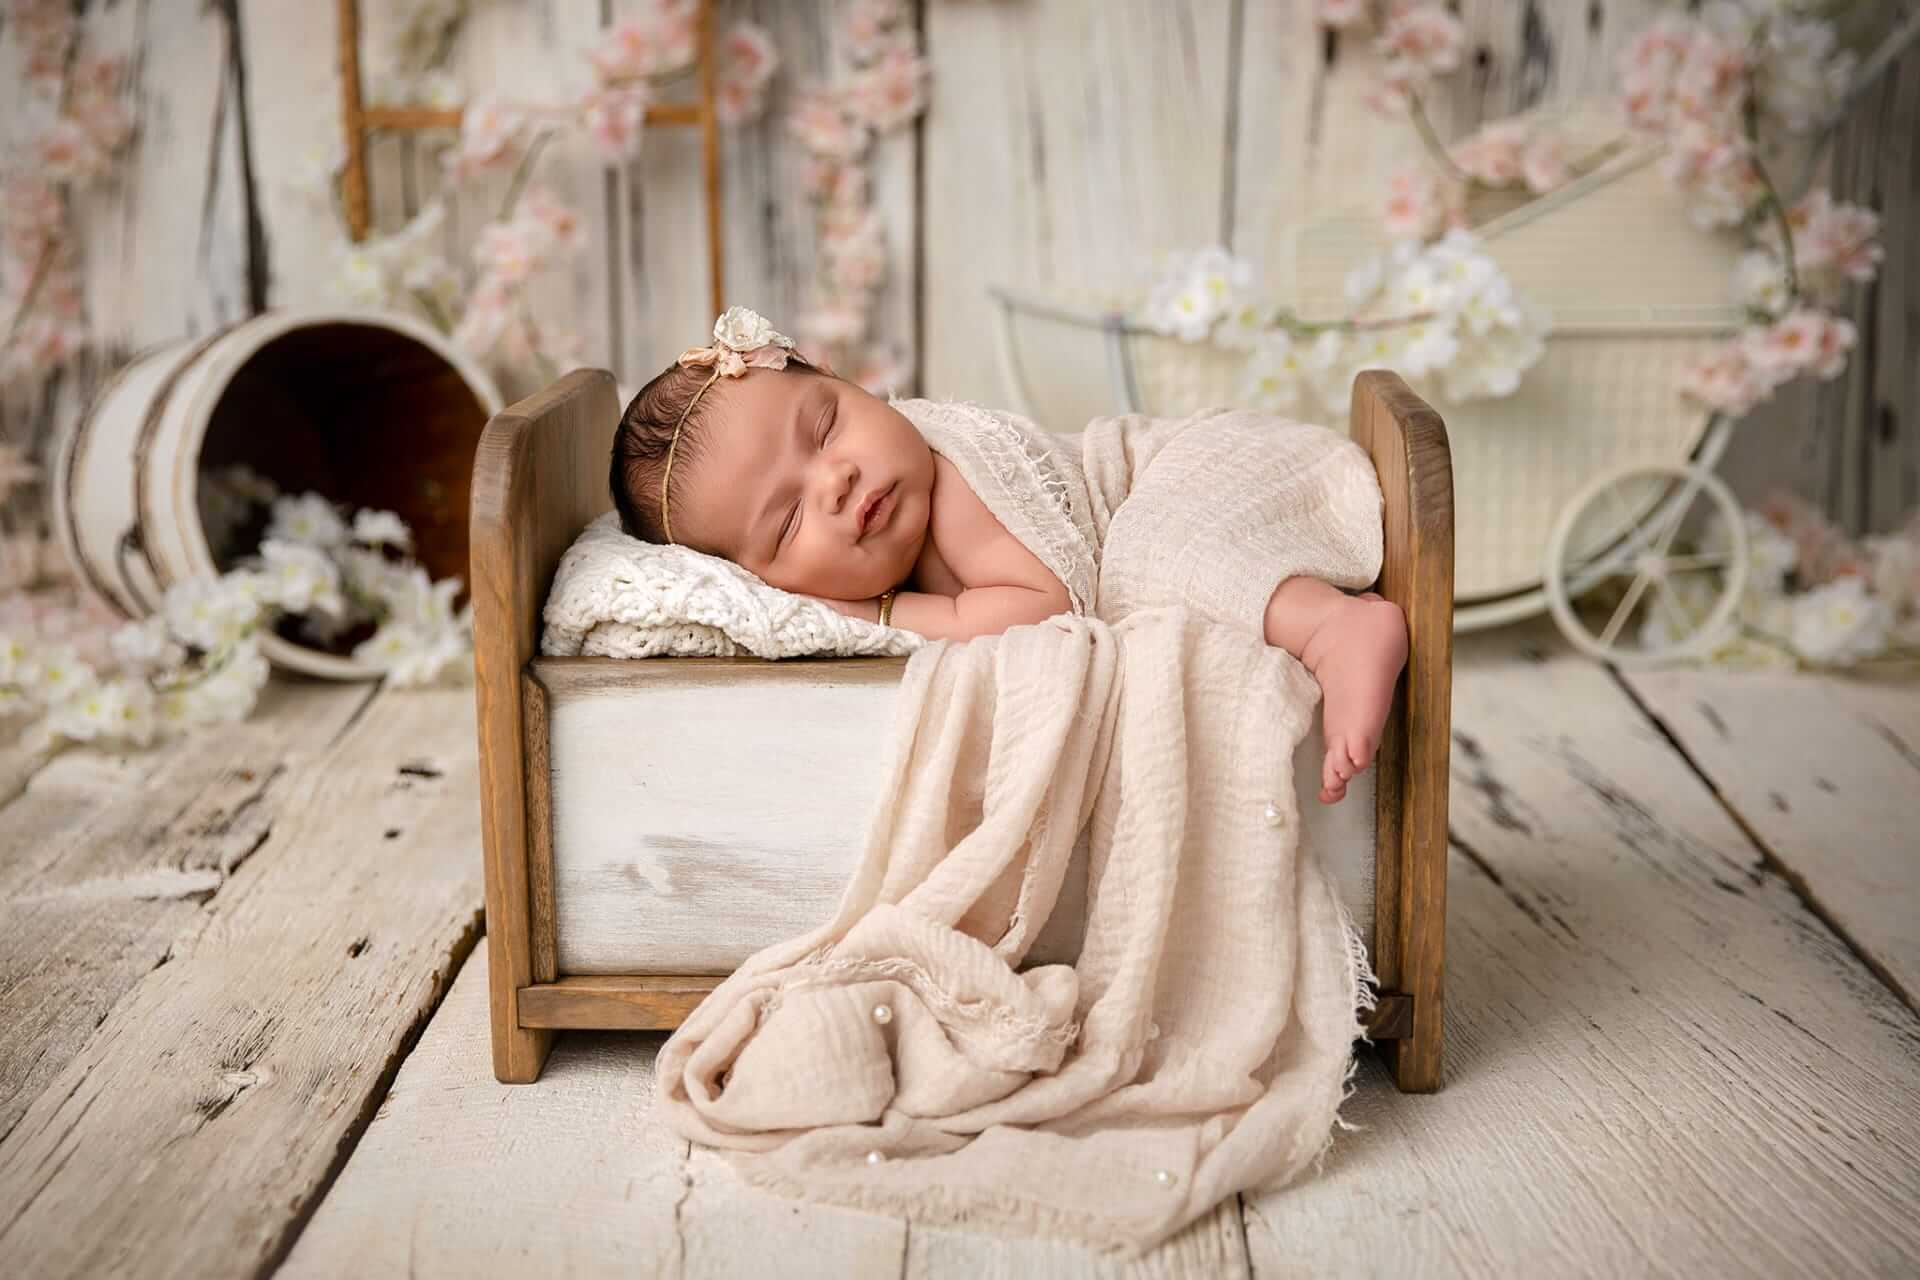 Un photographe capture de magnifiques photos d'un nouveau-né endormi posé dans une boîte en bois, entourée de fleurs.